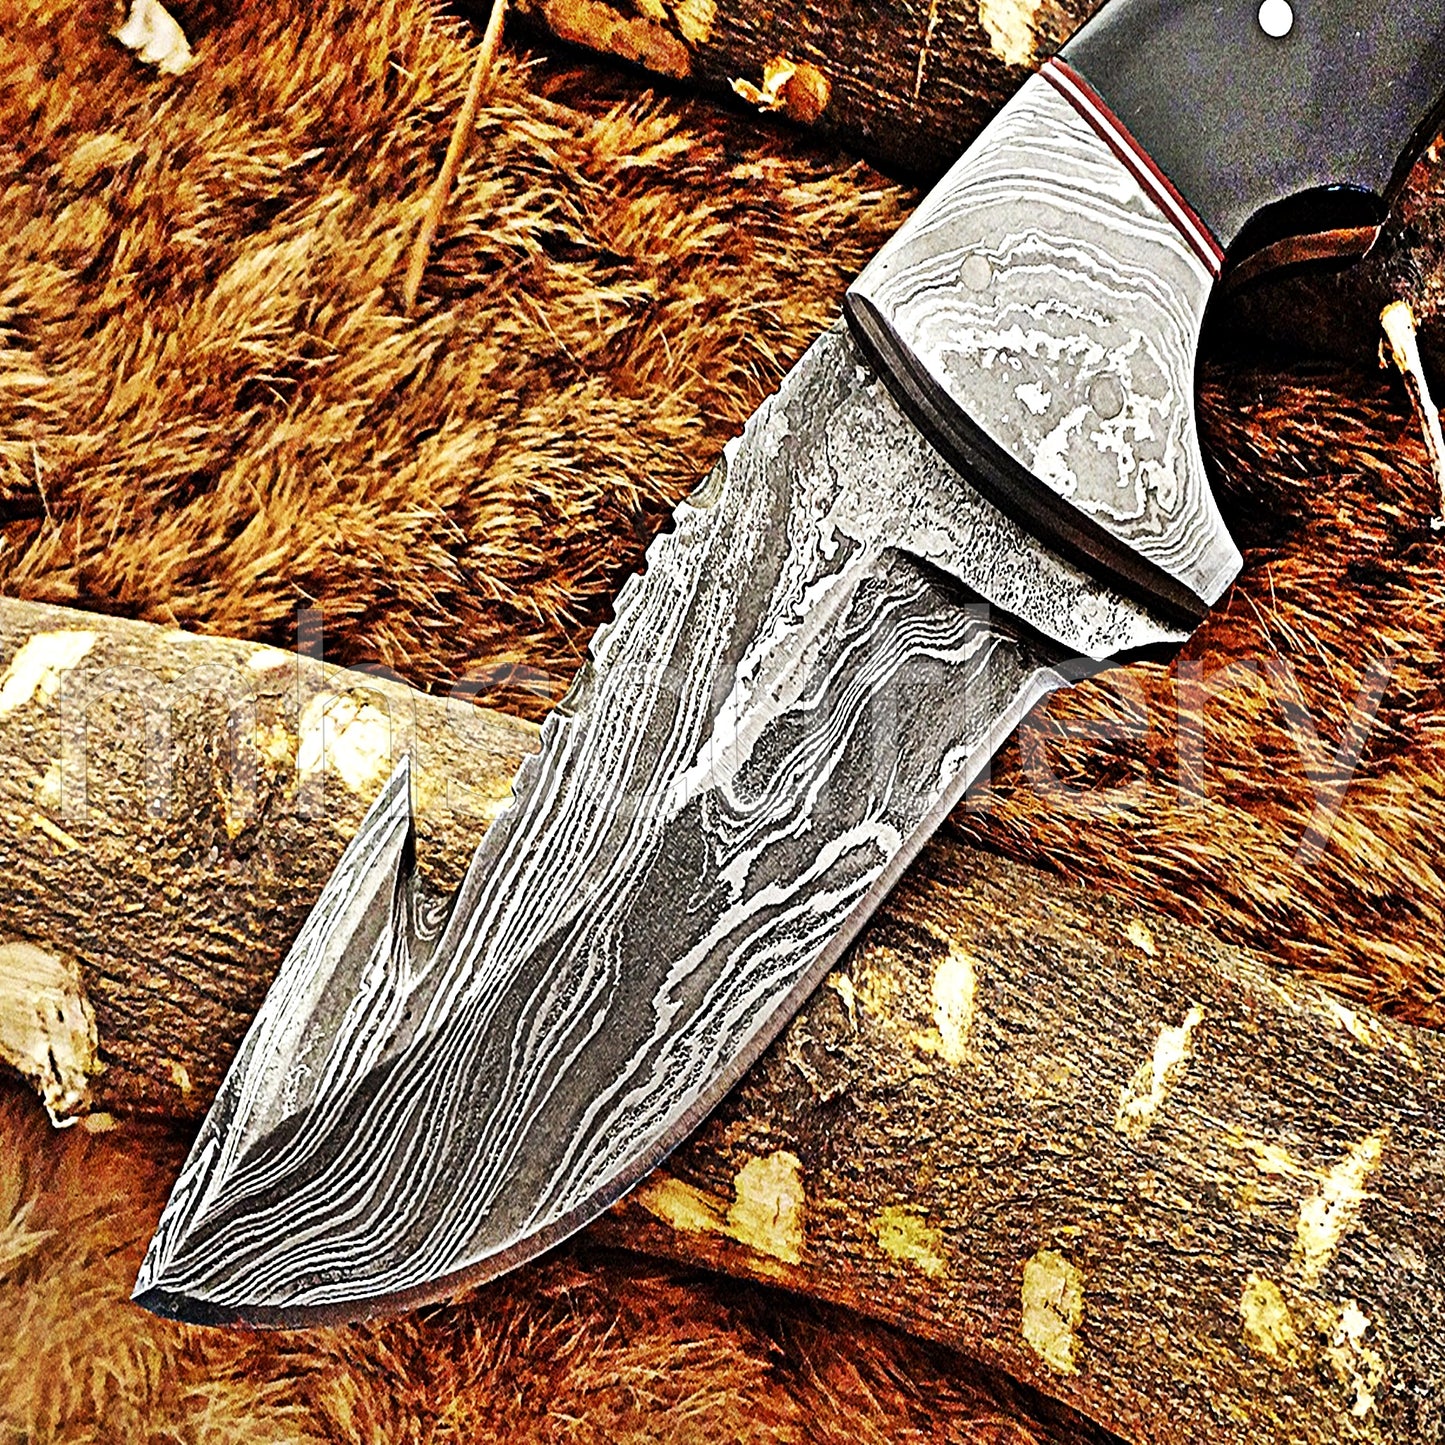 Damascus Steel Gut Hook Skinner Knife / Bull Horn Handle | mhscutlery